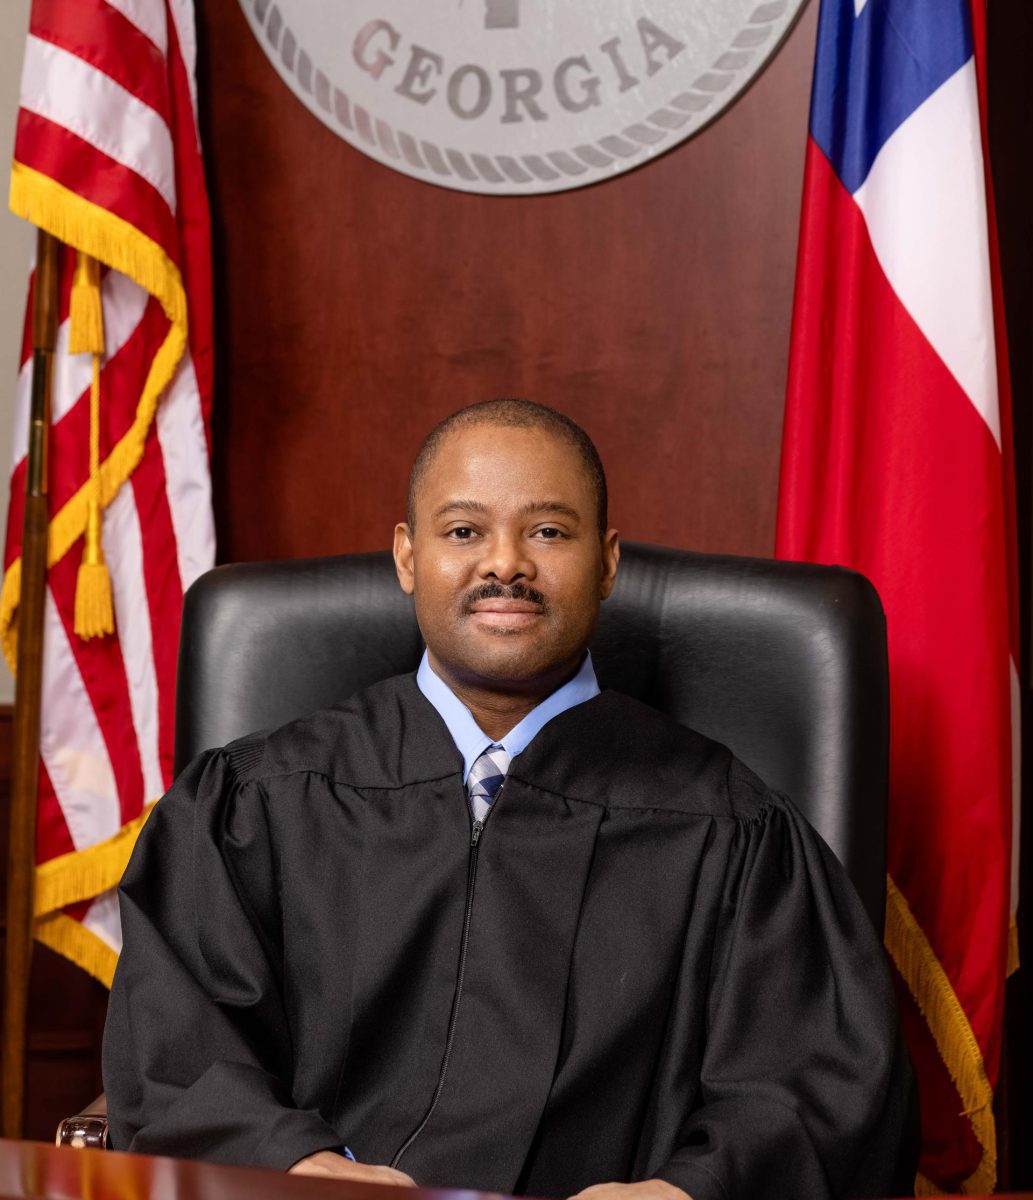 Judge Brad Gardner